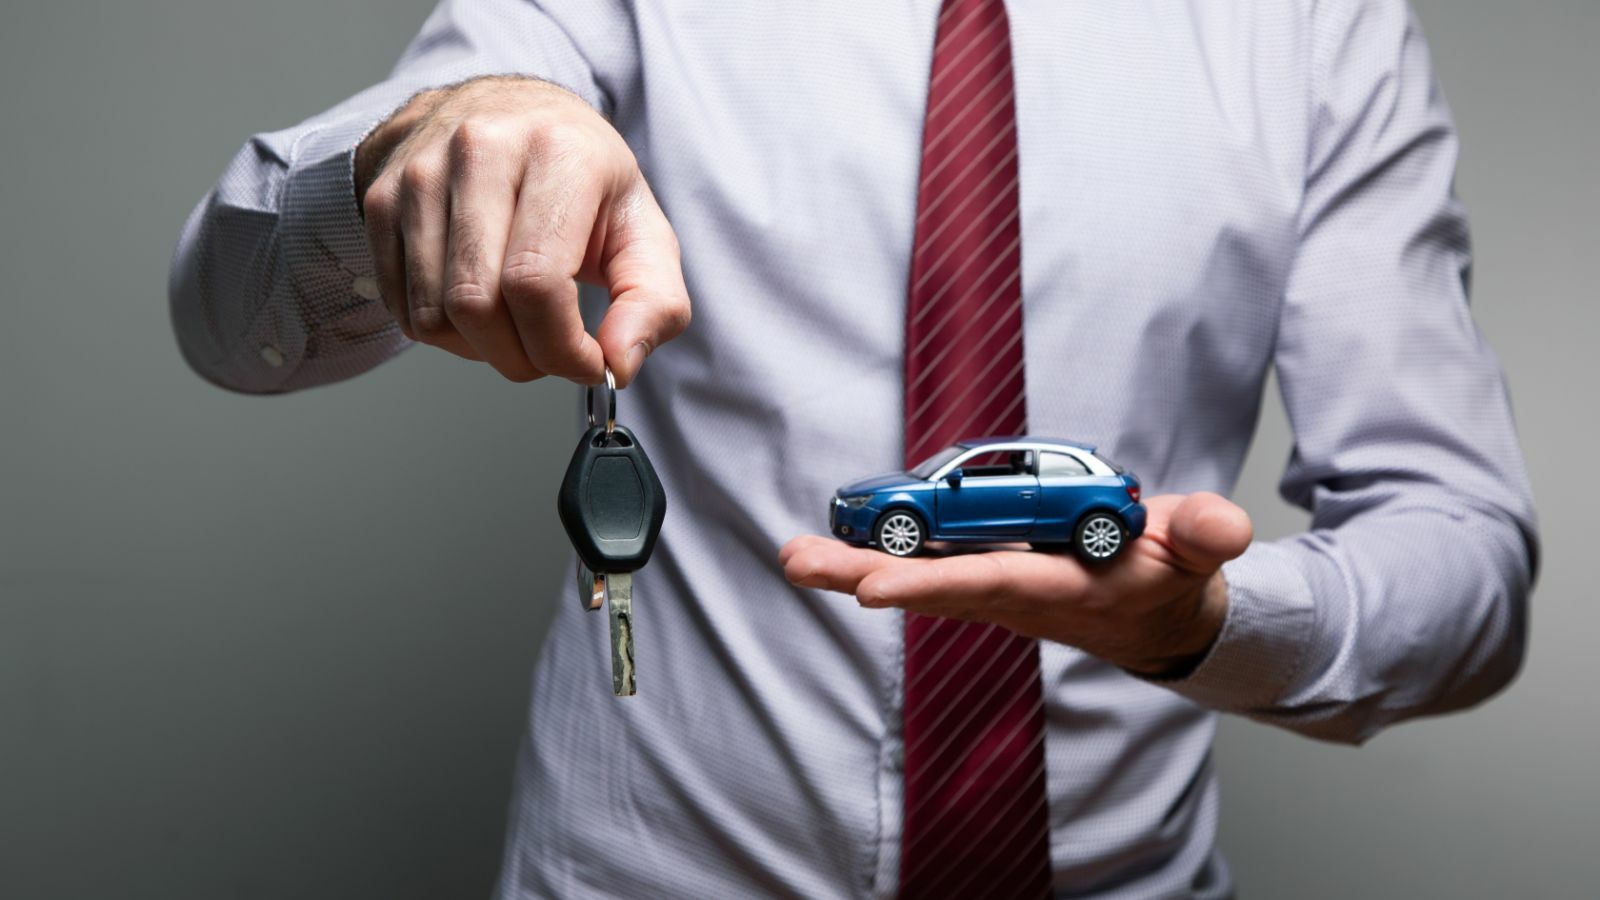 Rechtliche Aspekte beim privaten Autoverkauf erklärt